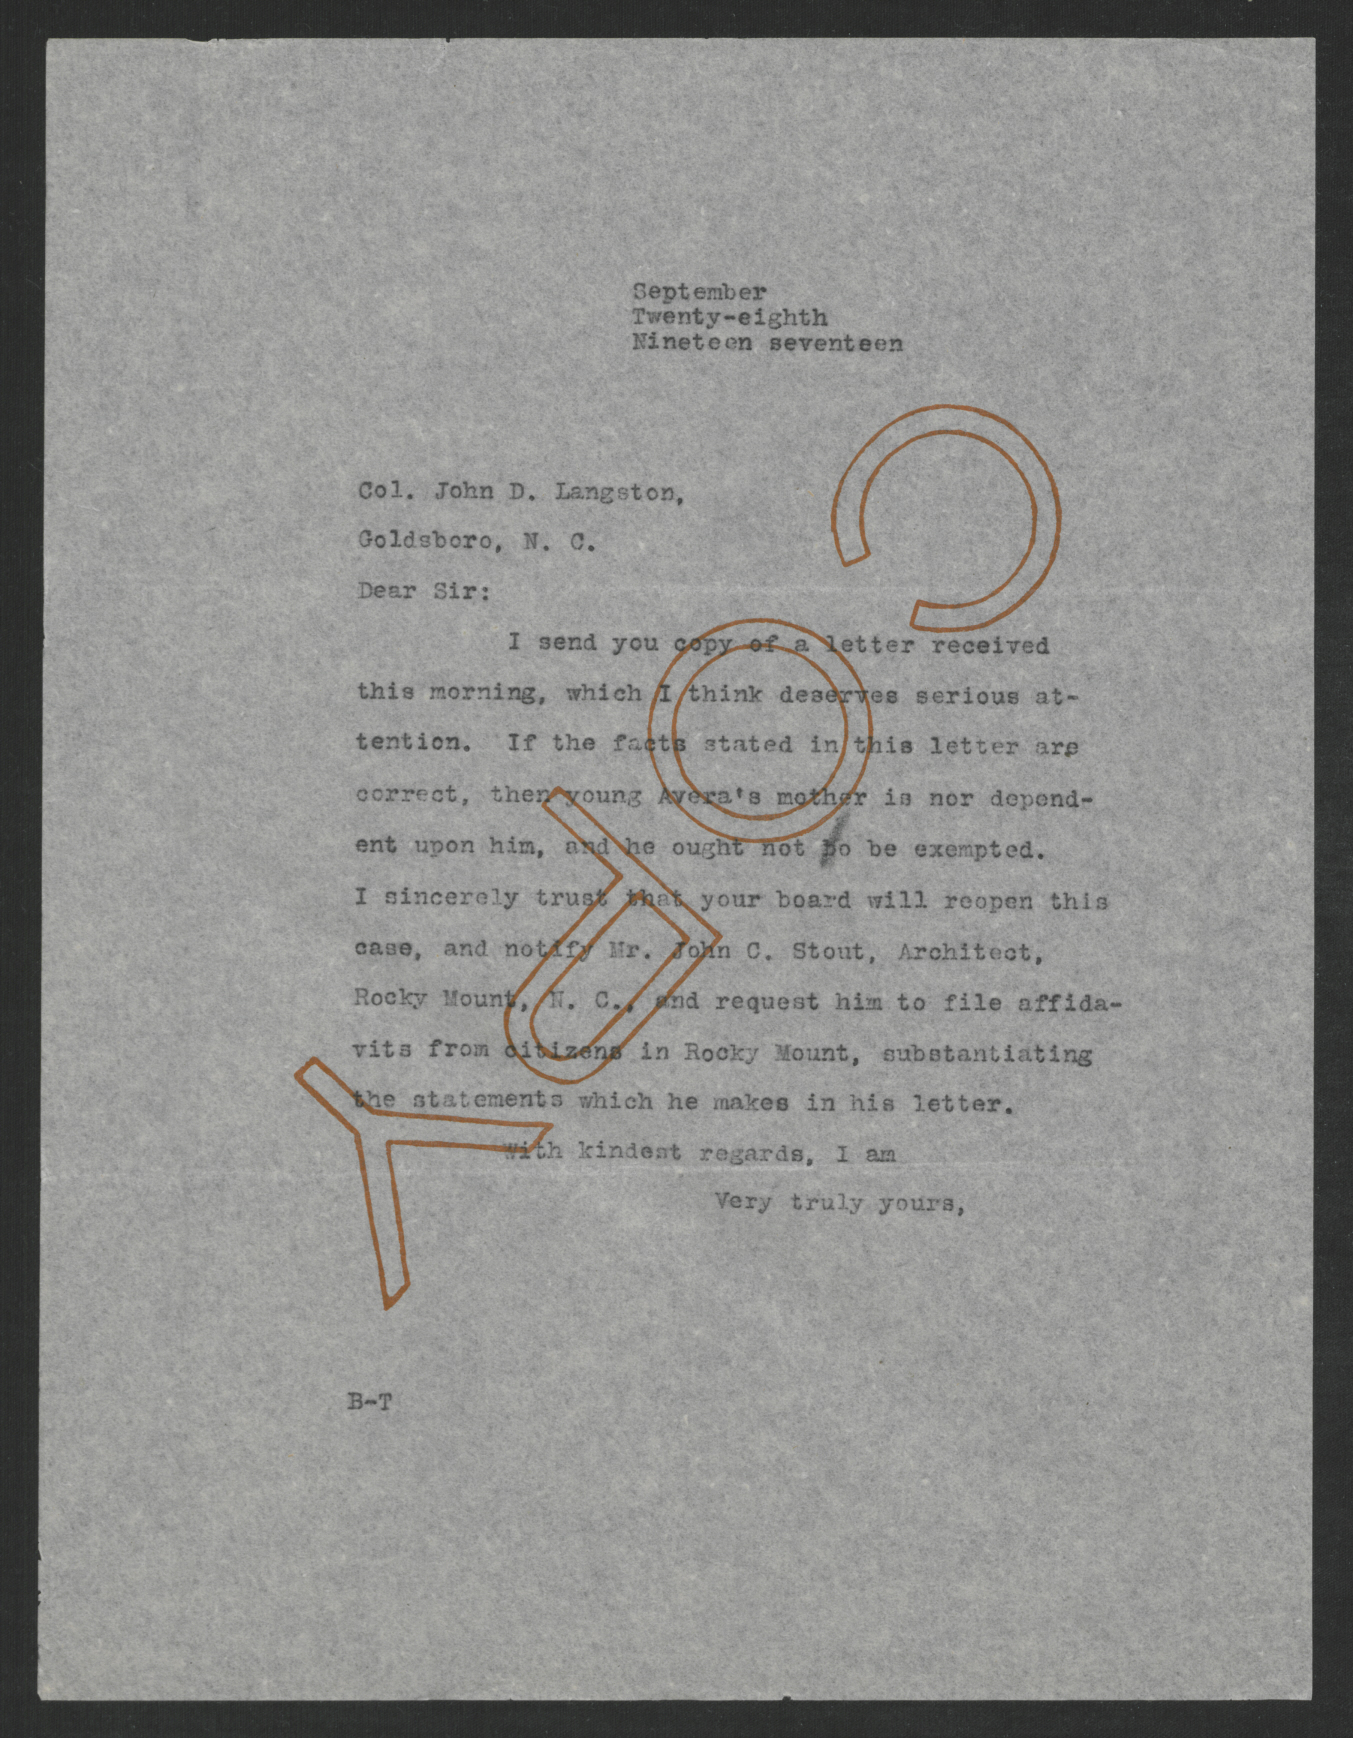 Letter from Thomas W. Bickett to John D. Langston, September 28, 1917